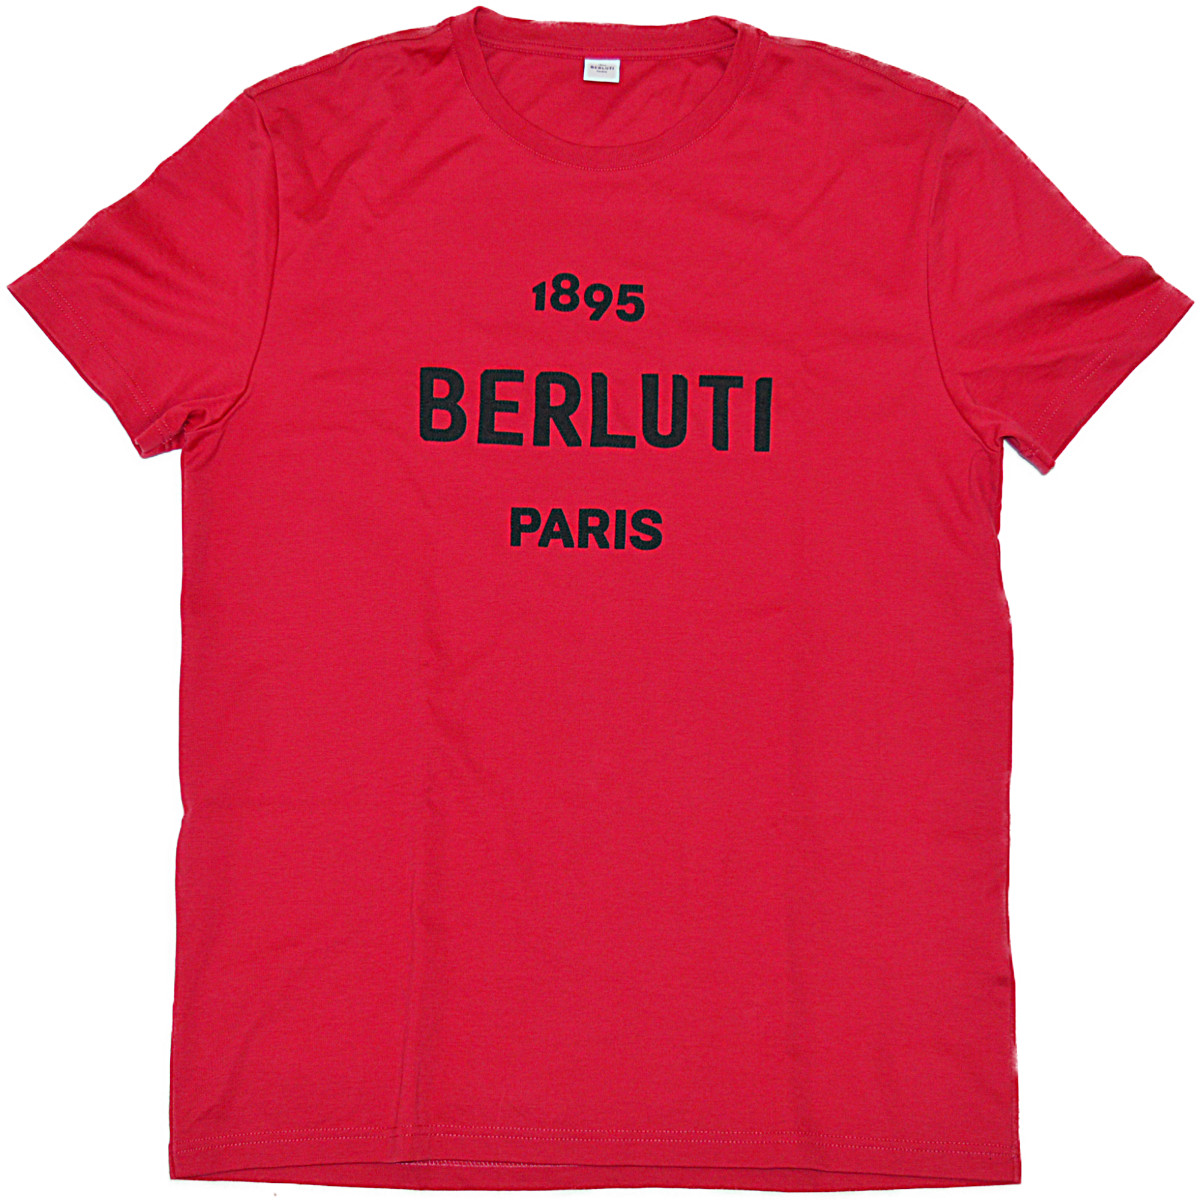 BERLUTI ベルルッティ 100%コットン 期間限定お試し価格 メンズ 限定タイムセール ロゴTシャツ カジュアル 1895 大人ラグジュアリー 中古 PARIS